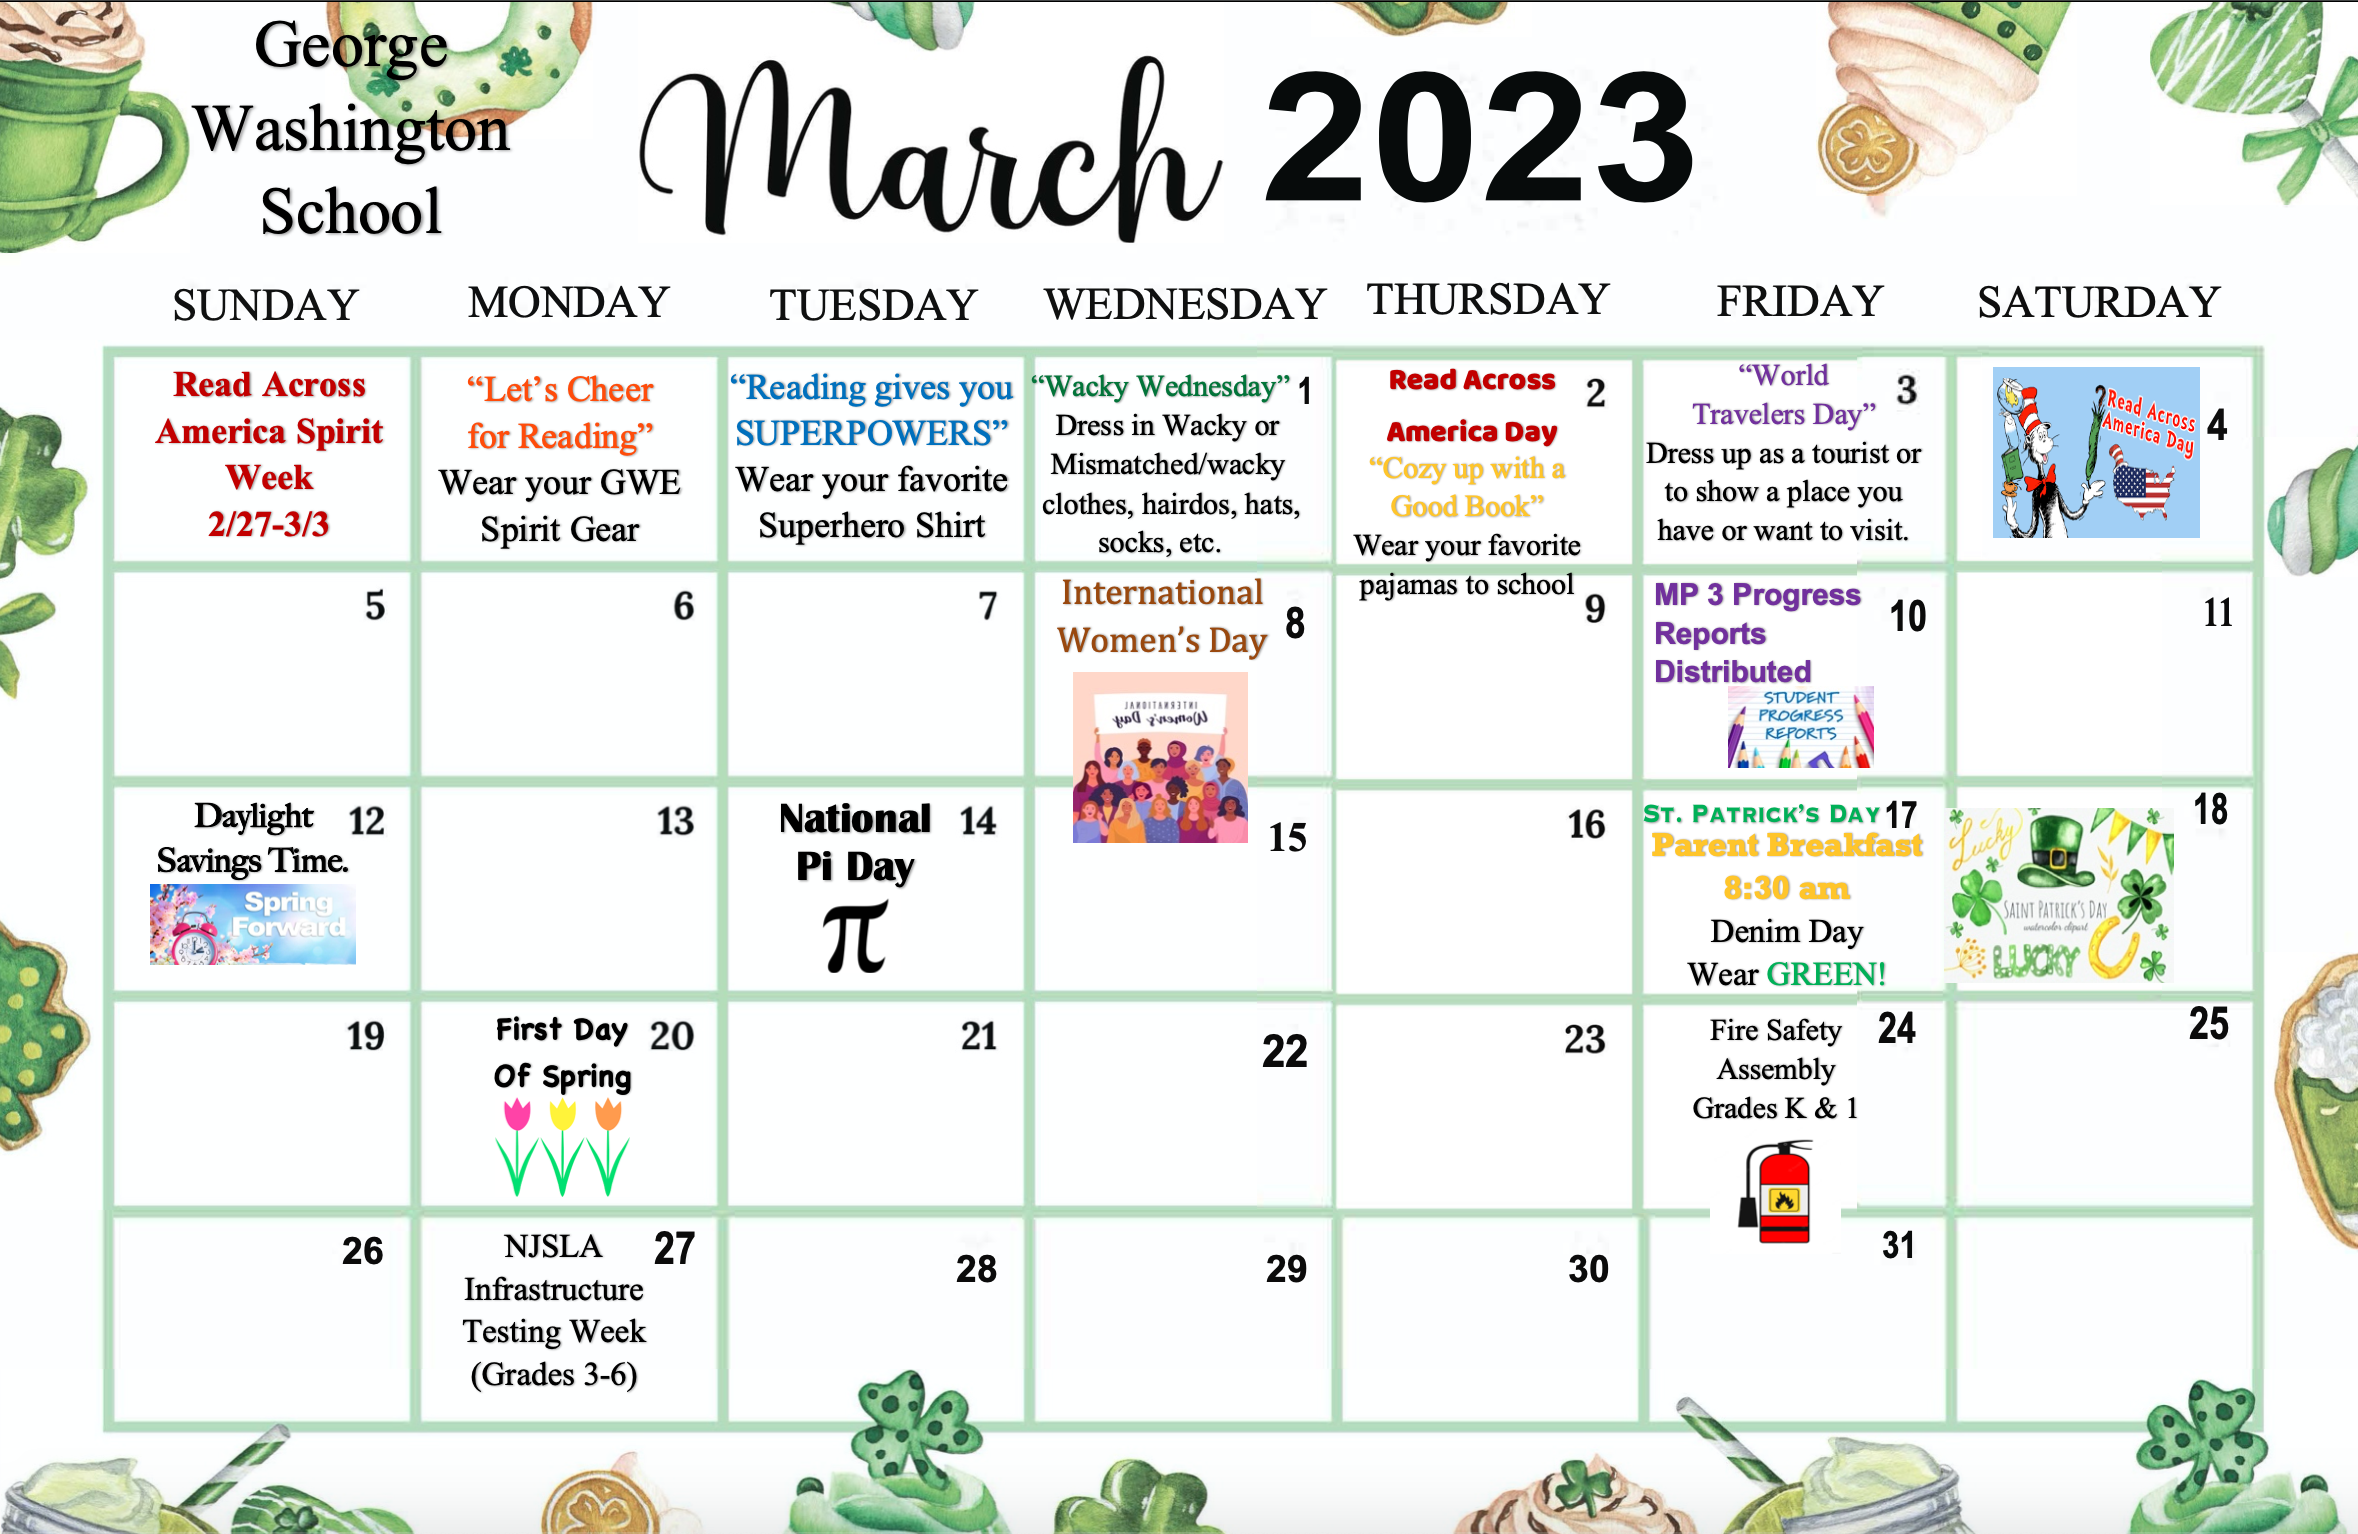 March 2023 Calendar-George Washington School